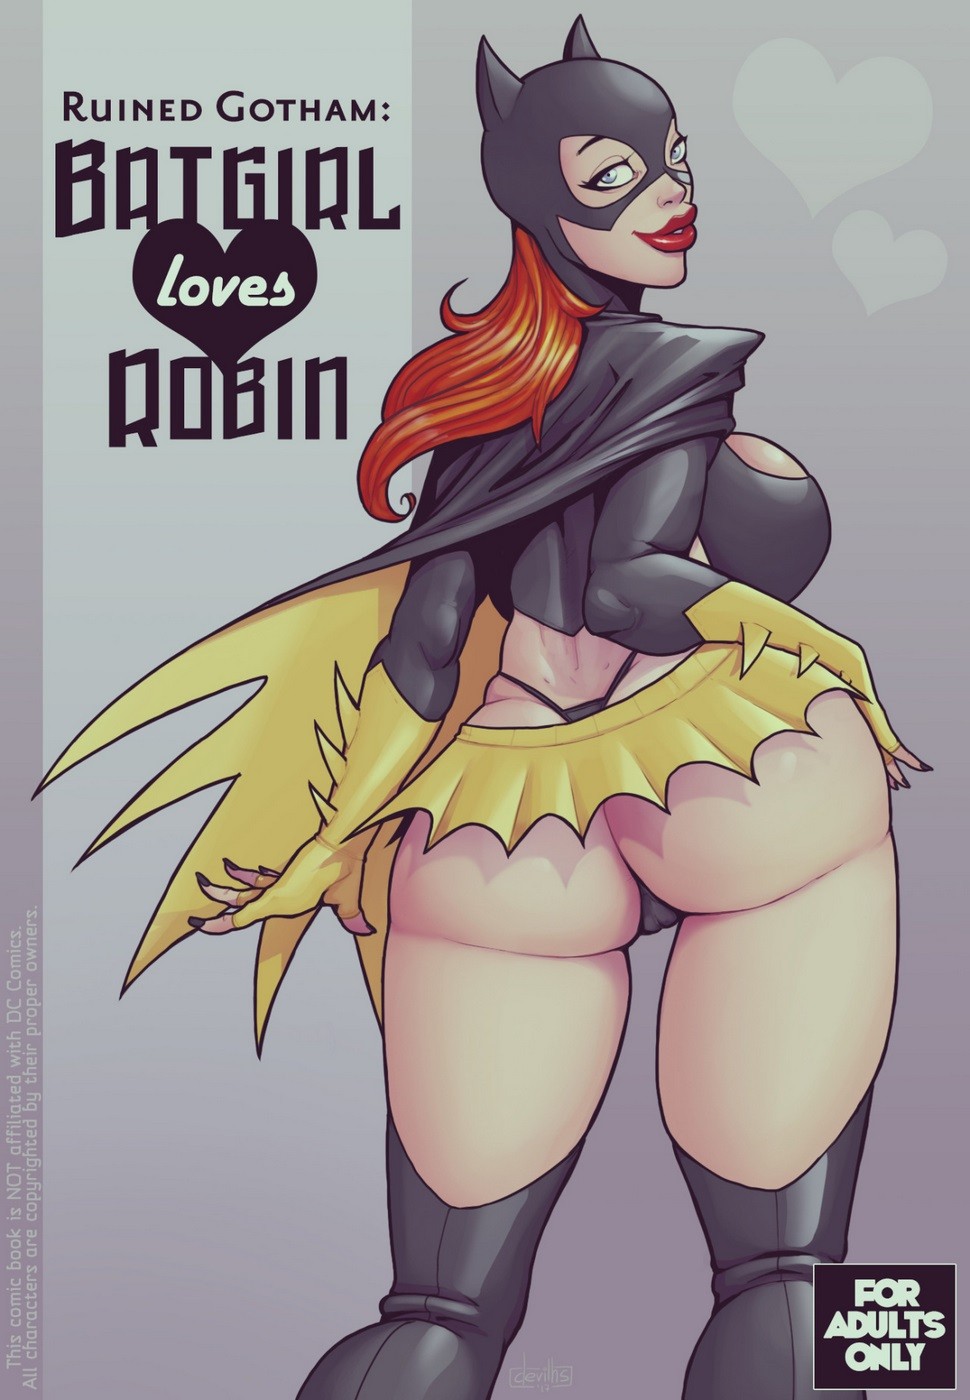 Ruined Gotham - BATIGIRL Loves ROBIN